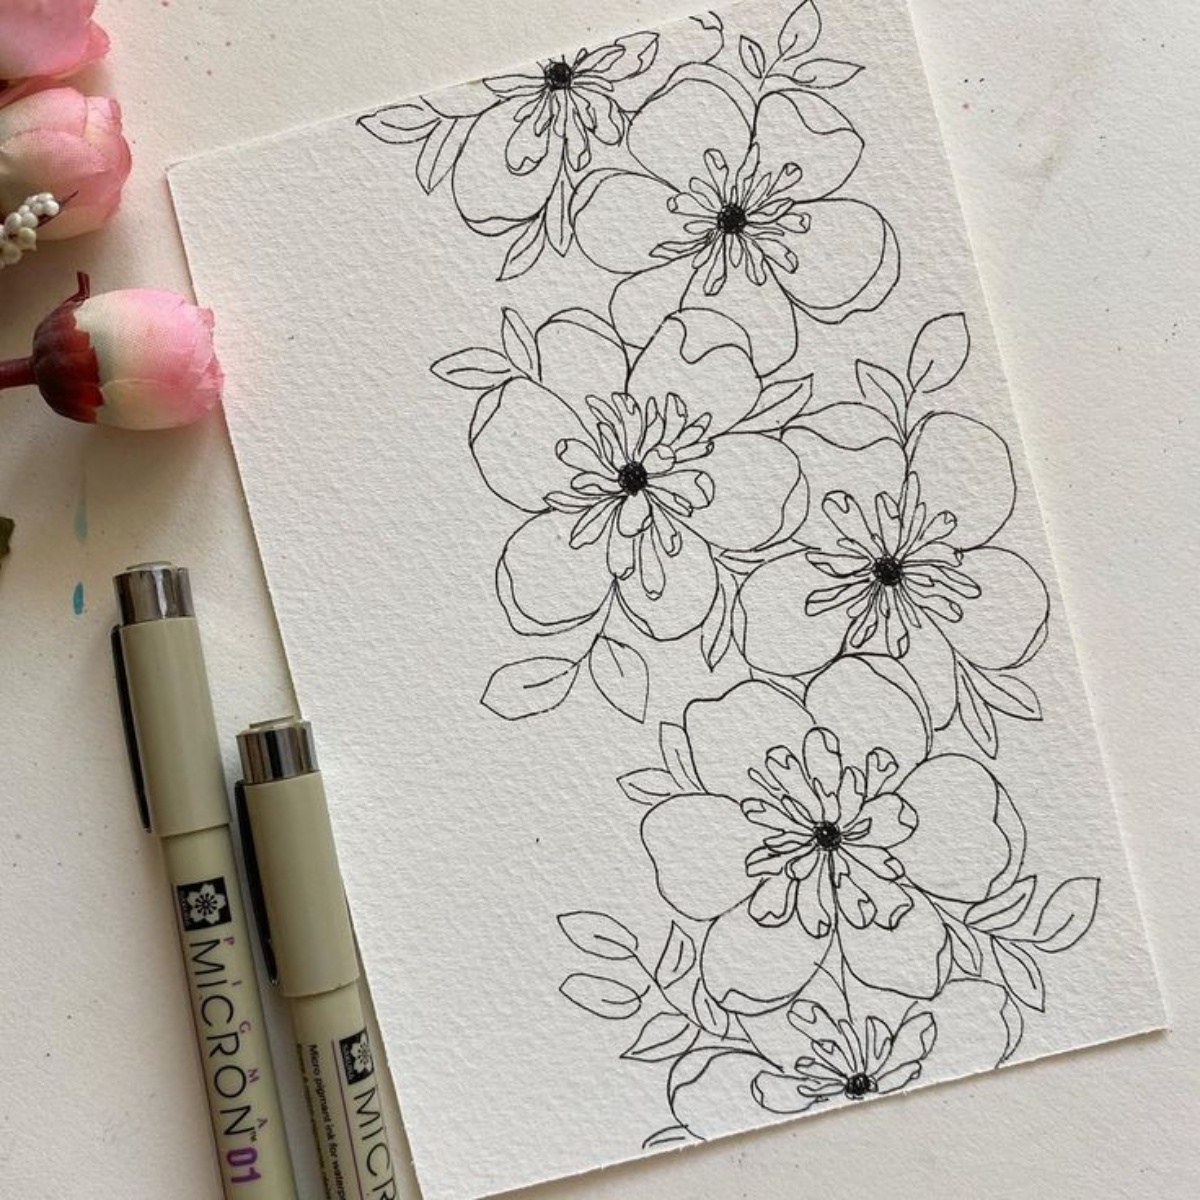 disegni a matita facili foglio ruvido con disegno di fiori